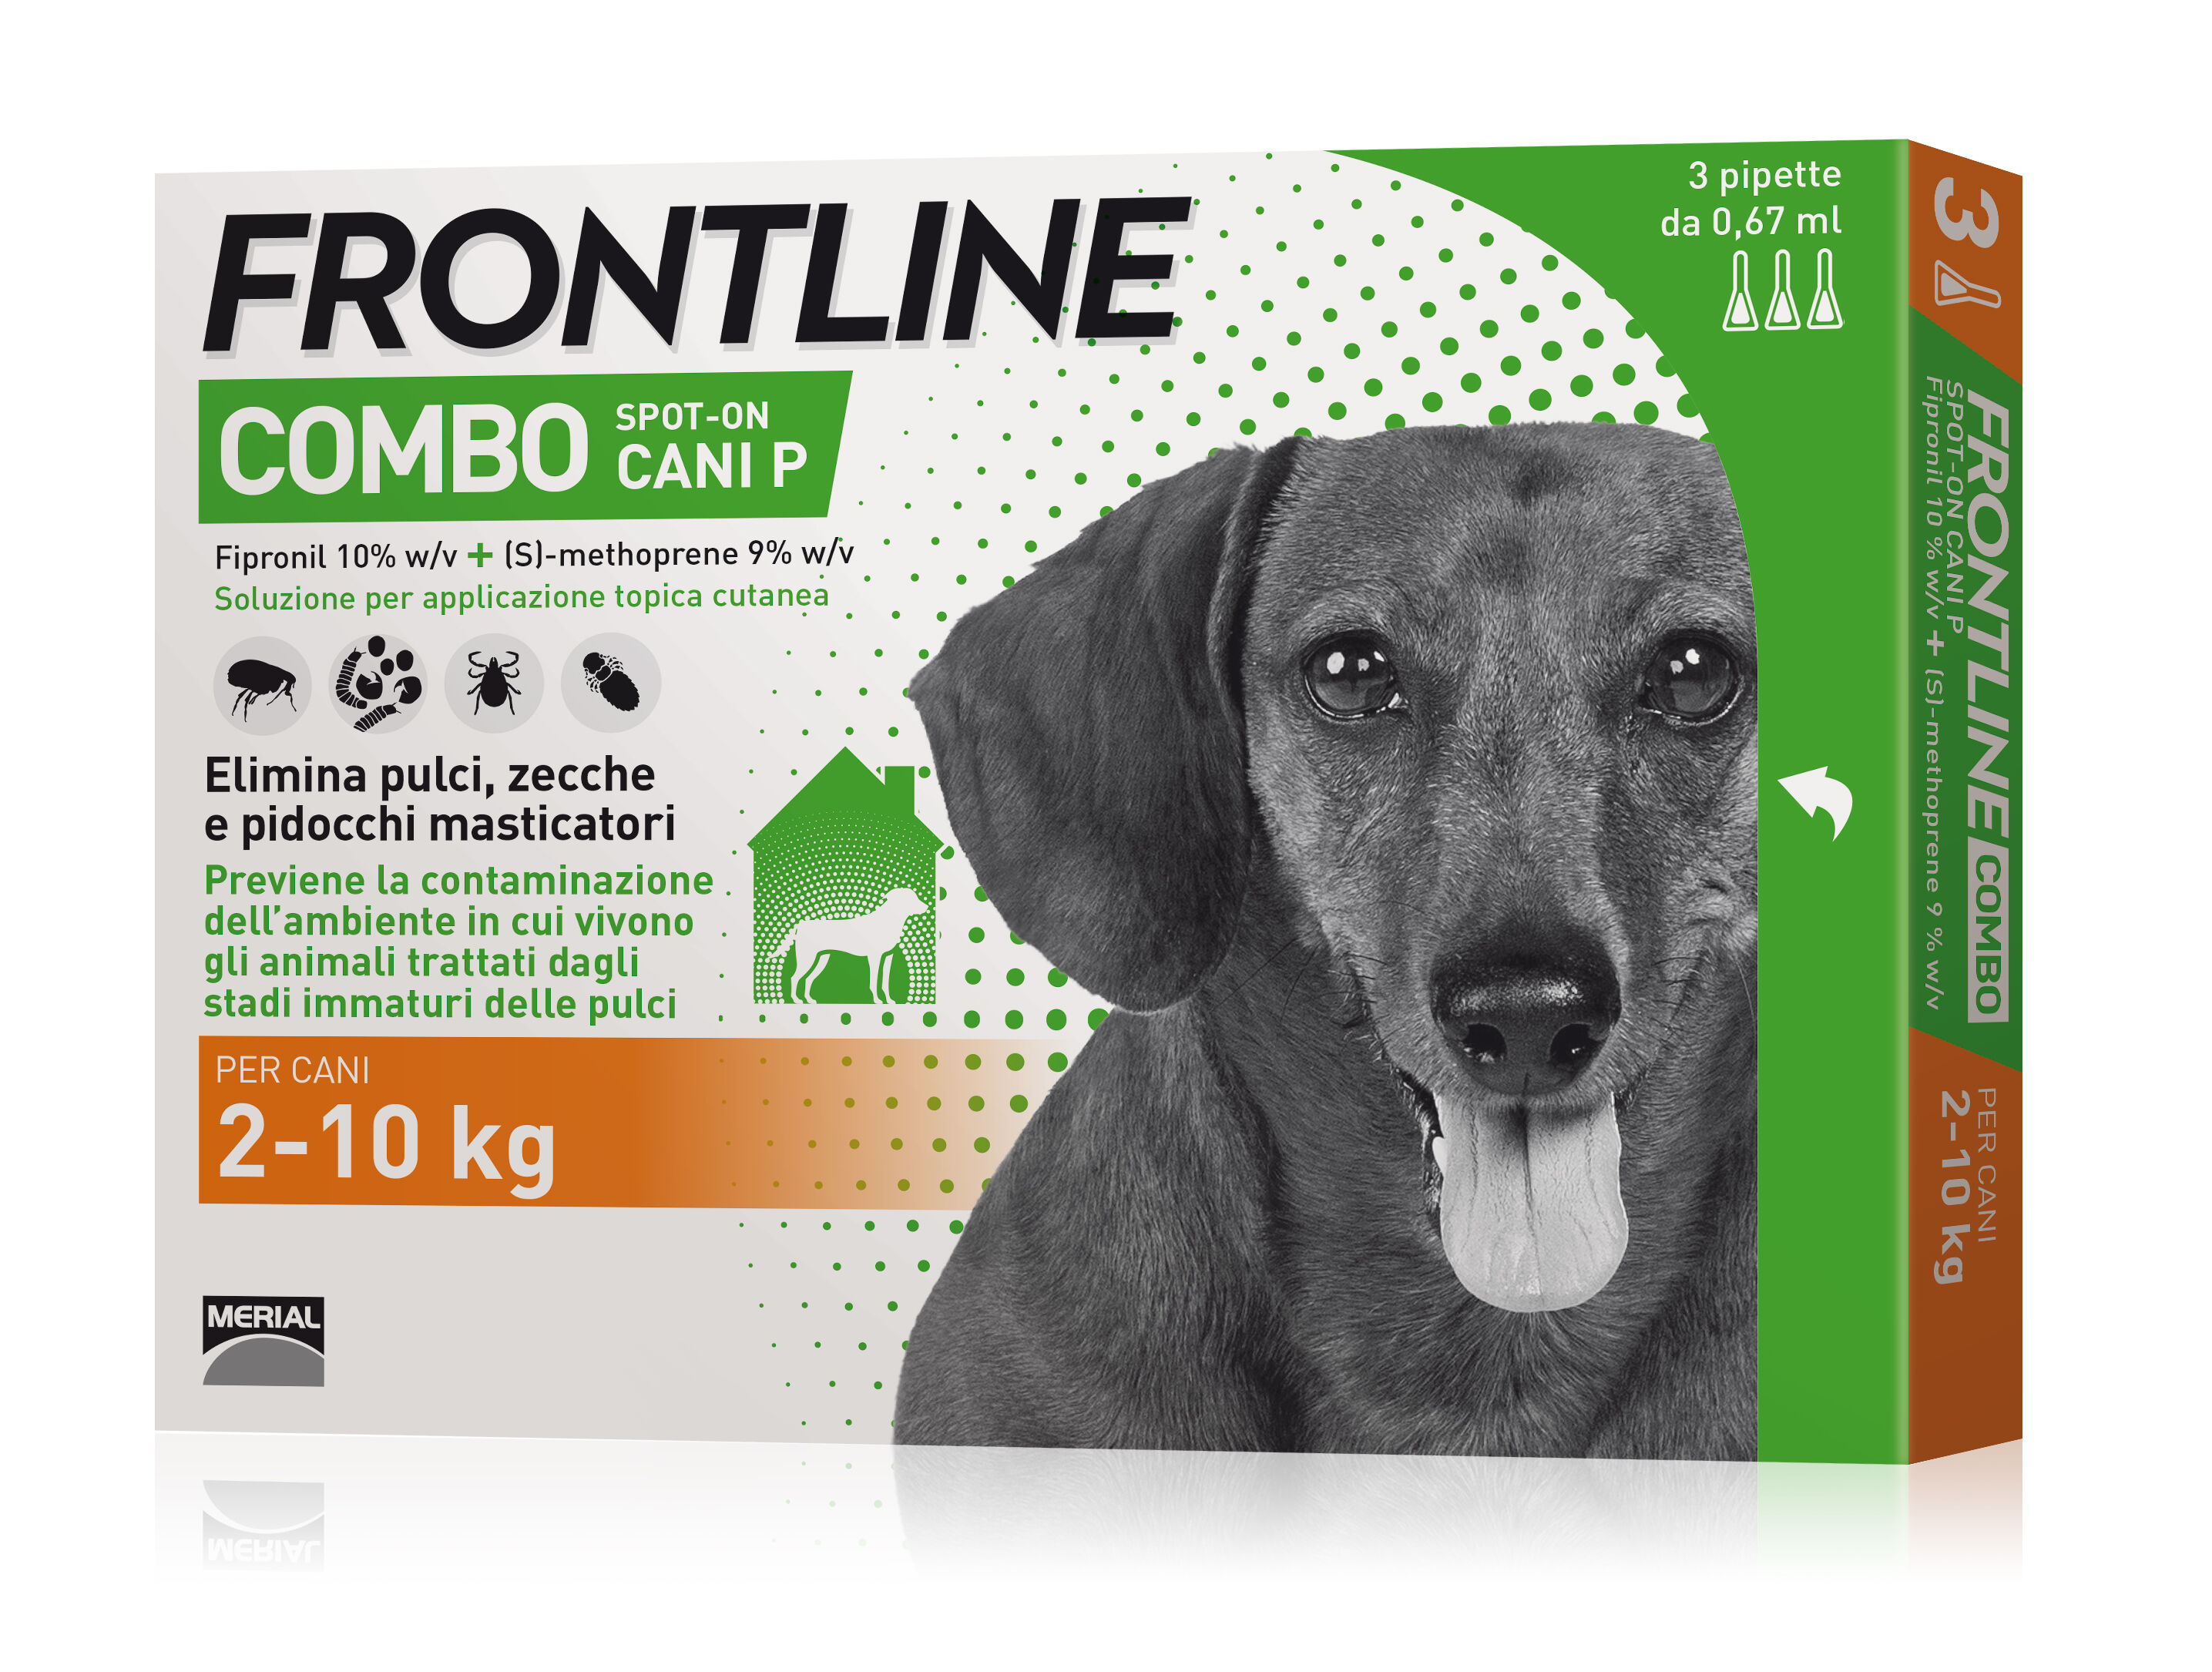 boehringer vet frontline frontline combo spot-on per cani 3 pipette da 0,67ml 2-10kg - protezione antiparassitaria per cani di piccola taglia